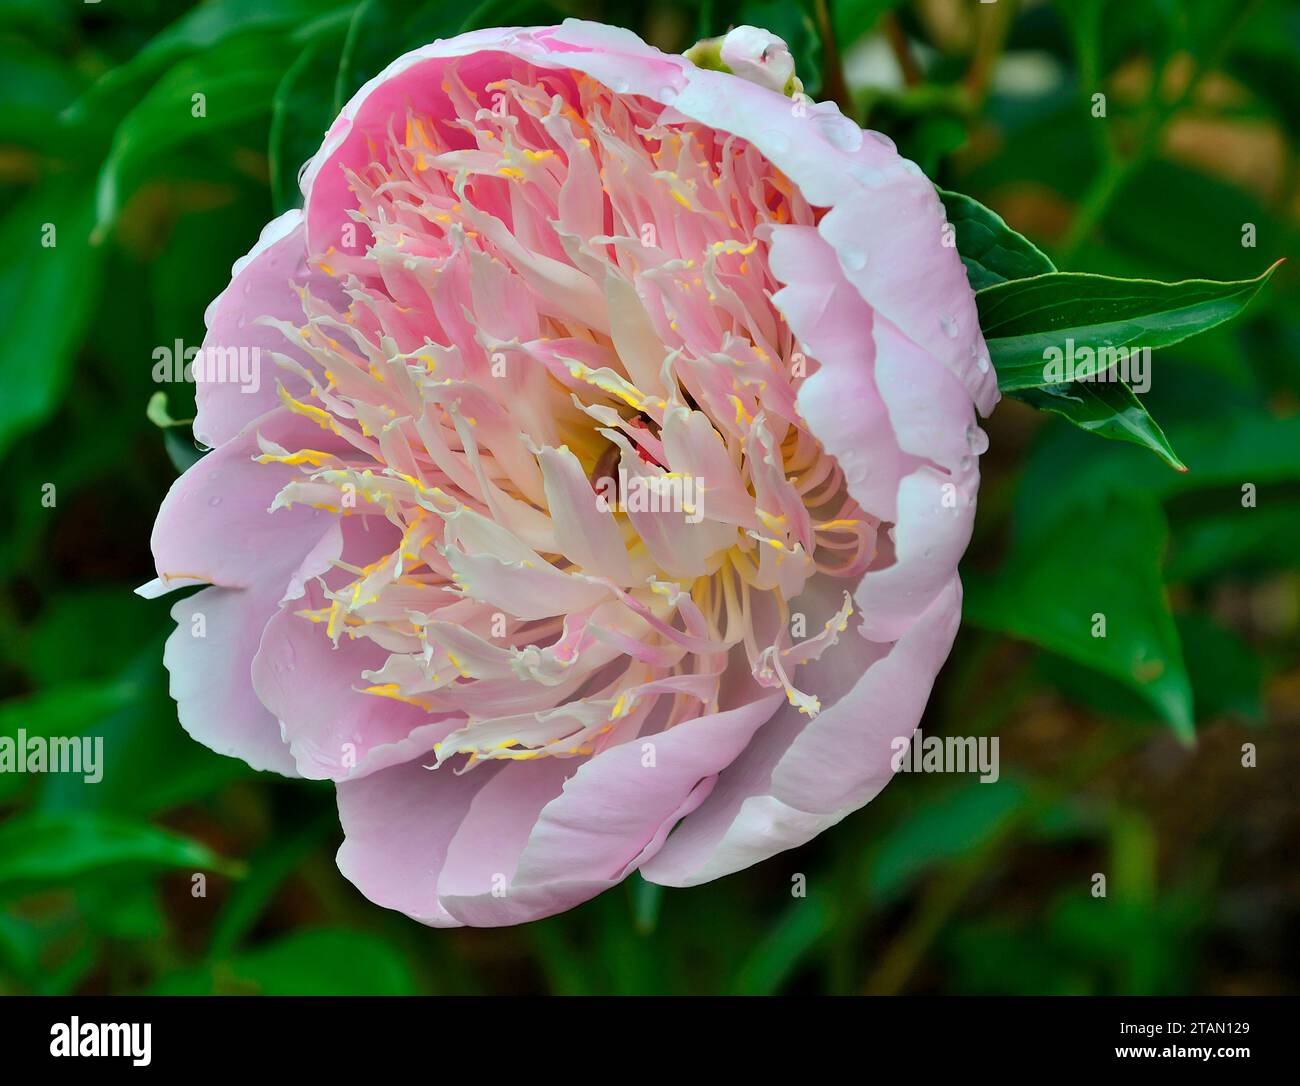 Variété fleur de pivoine rose pâle crème Puff avec staminodes rose crémeux. Délicatesse délicieuse et perfection d'une fleur élégante, beauté de la nature, gard Banque D'Images